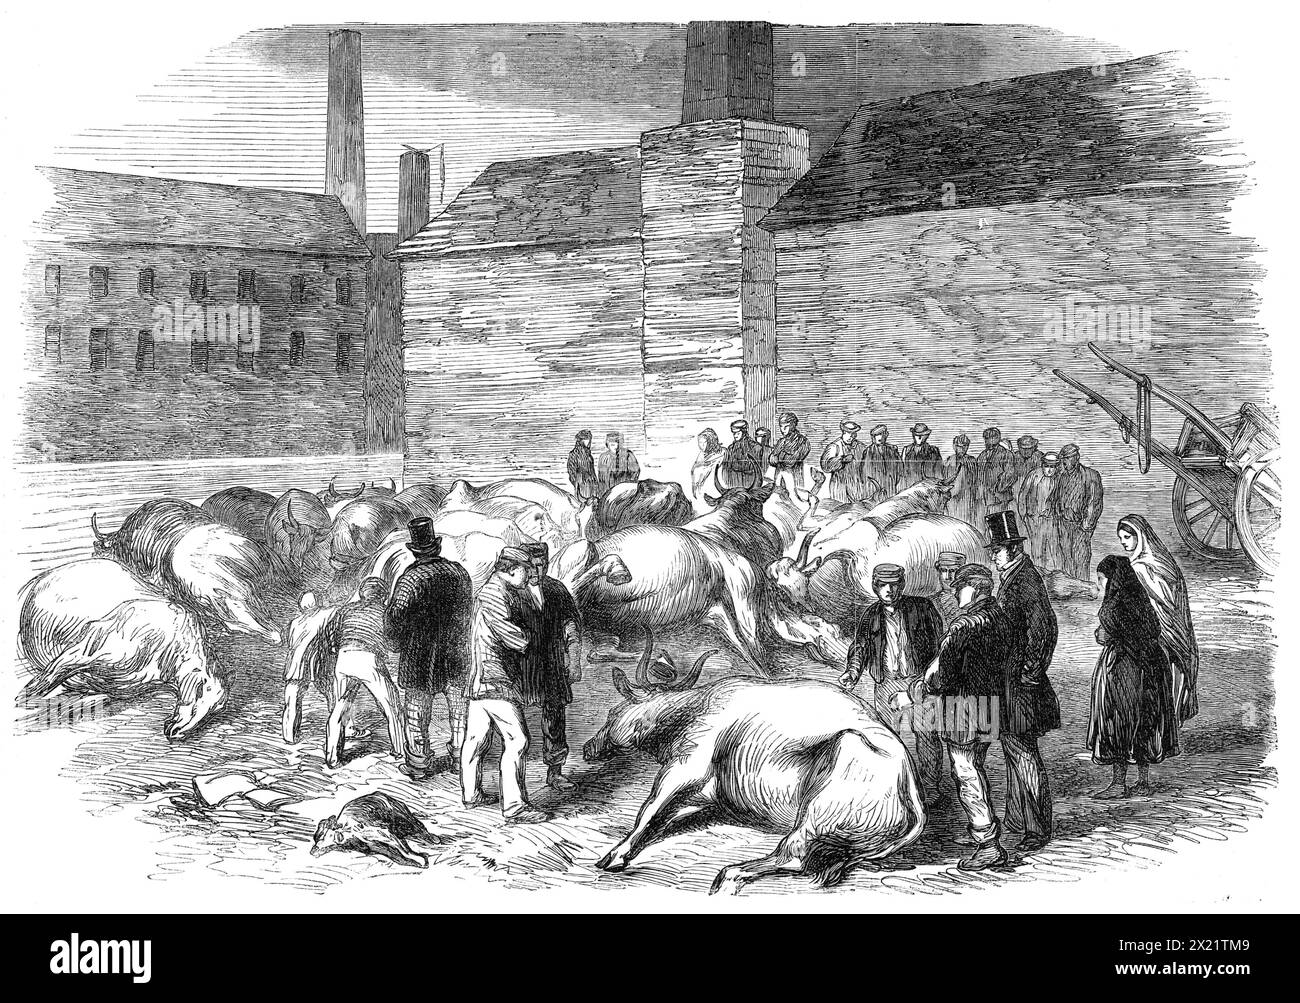 Illustrazioni dell'inondazione a Sheffield: Drowned Cattle at High Bank, on the River Don, 1864. Dopo lo scoppio di un serbatoio, causato da materiali da costruzione inadeguati. Più di cento persone sono state uccise. "...un certo numero di bovini... giacevano a High Bank, dopo essere stati trasportati dall'alluvione in quella parte del fiume - le loro carcasse sono enormemente gonfie, e intonacate di fango e argilla, uno spettacolo brutto, e simili si possono trovare raramente nei sobborghi di una grande città commerciale. Quando la luce del giorno si ruppe, il sabato mattina, grandi alberi, mucche e cavalli morti giacevano mescolati con diversi corpi umani Foto Stock